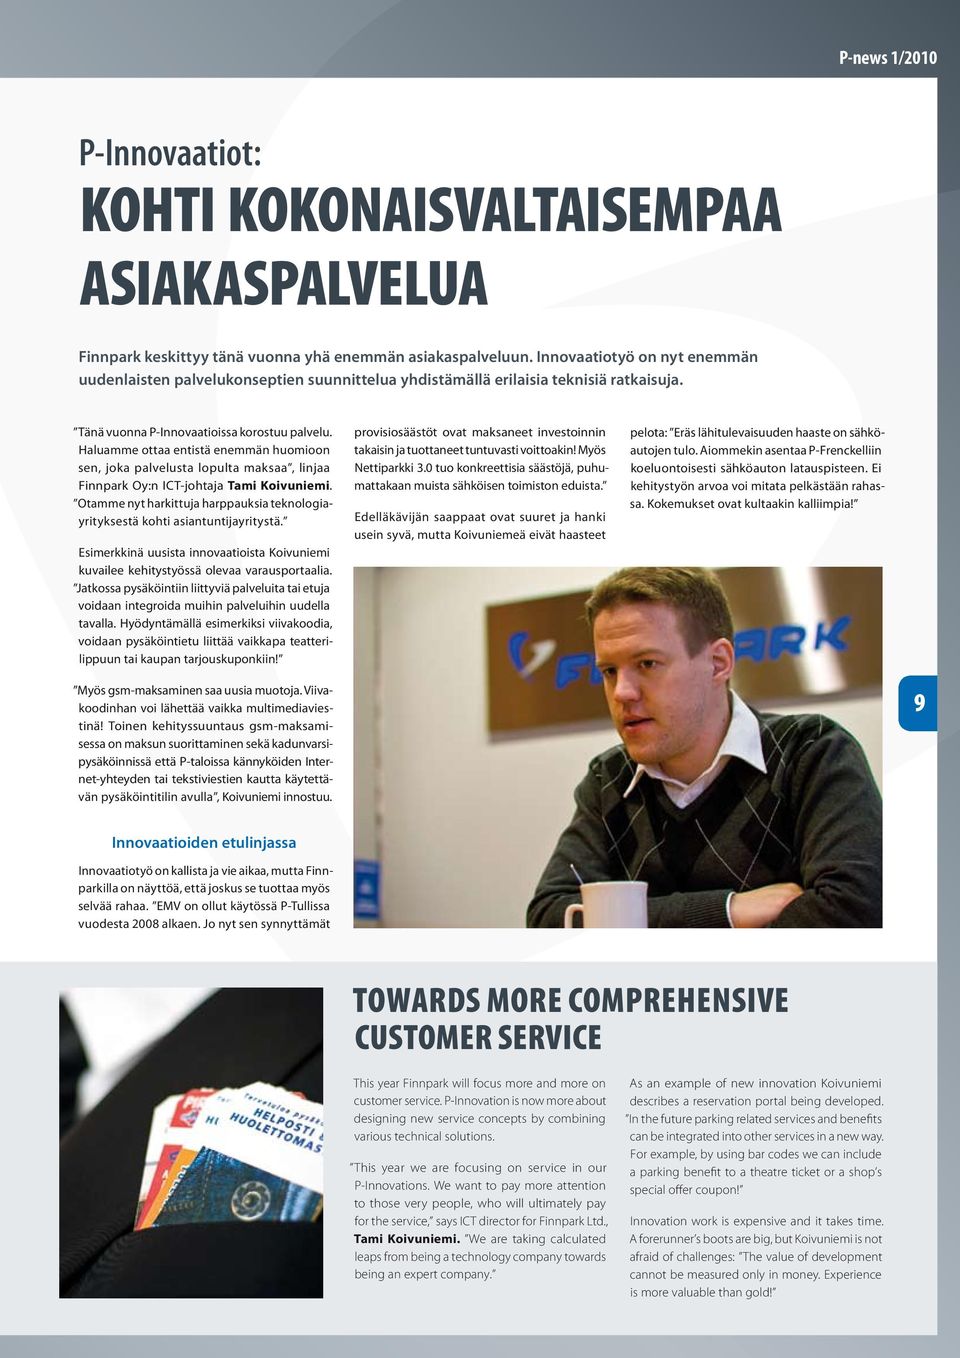 Haluamme ottaa entistä enemmän huomioon sen, joka palvelusta lopulta maksaa, linjaa Finnpark Oy:n ICT-johtaja Tami Koivuniemi.